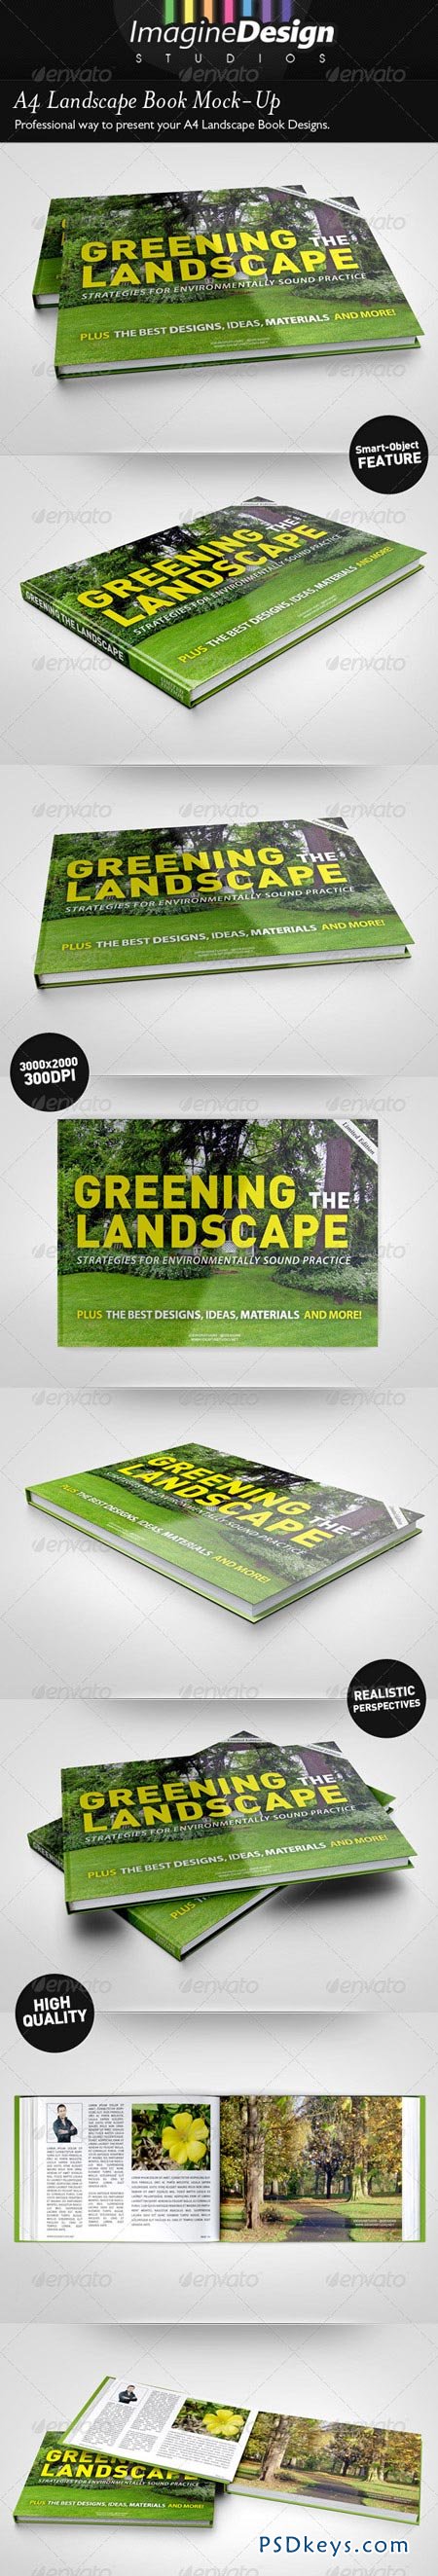 A4 Landscape Book Mock-Up 4985374